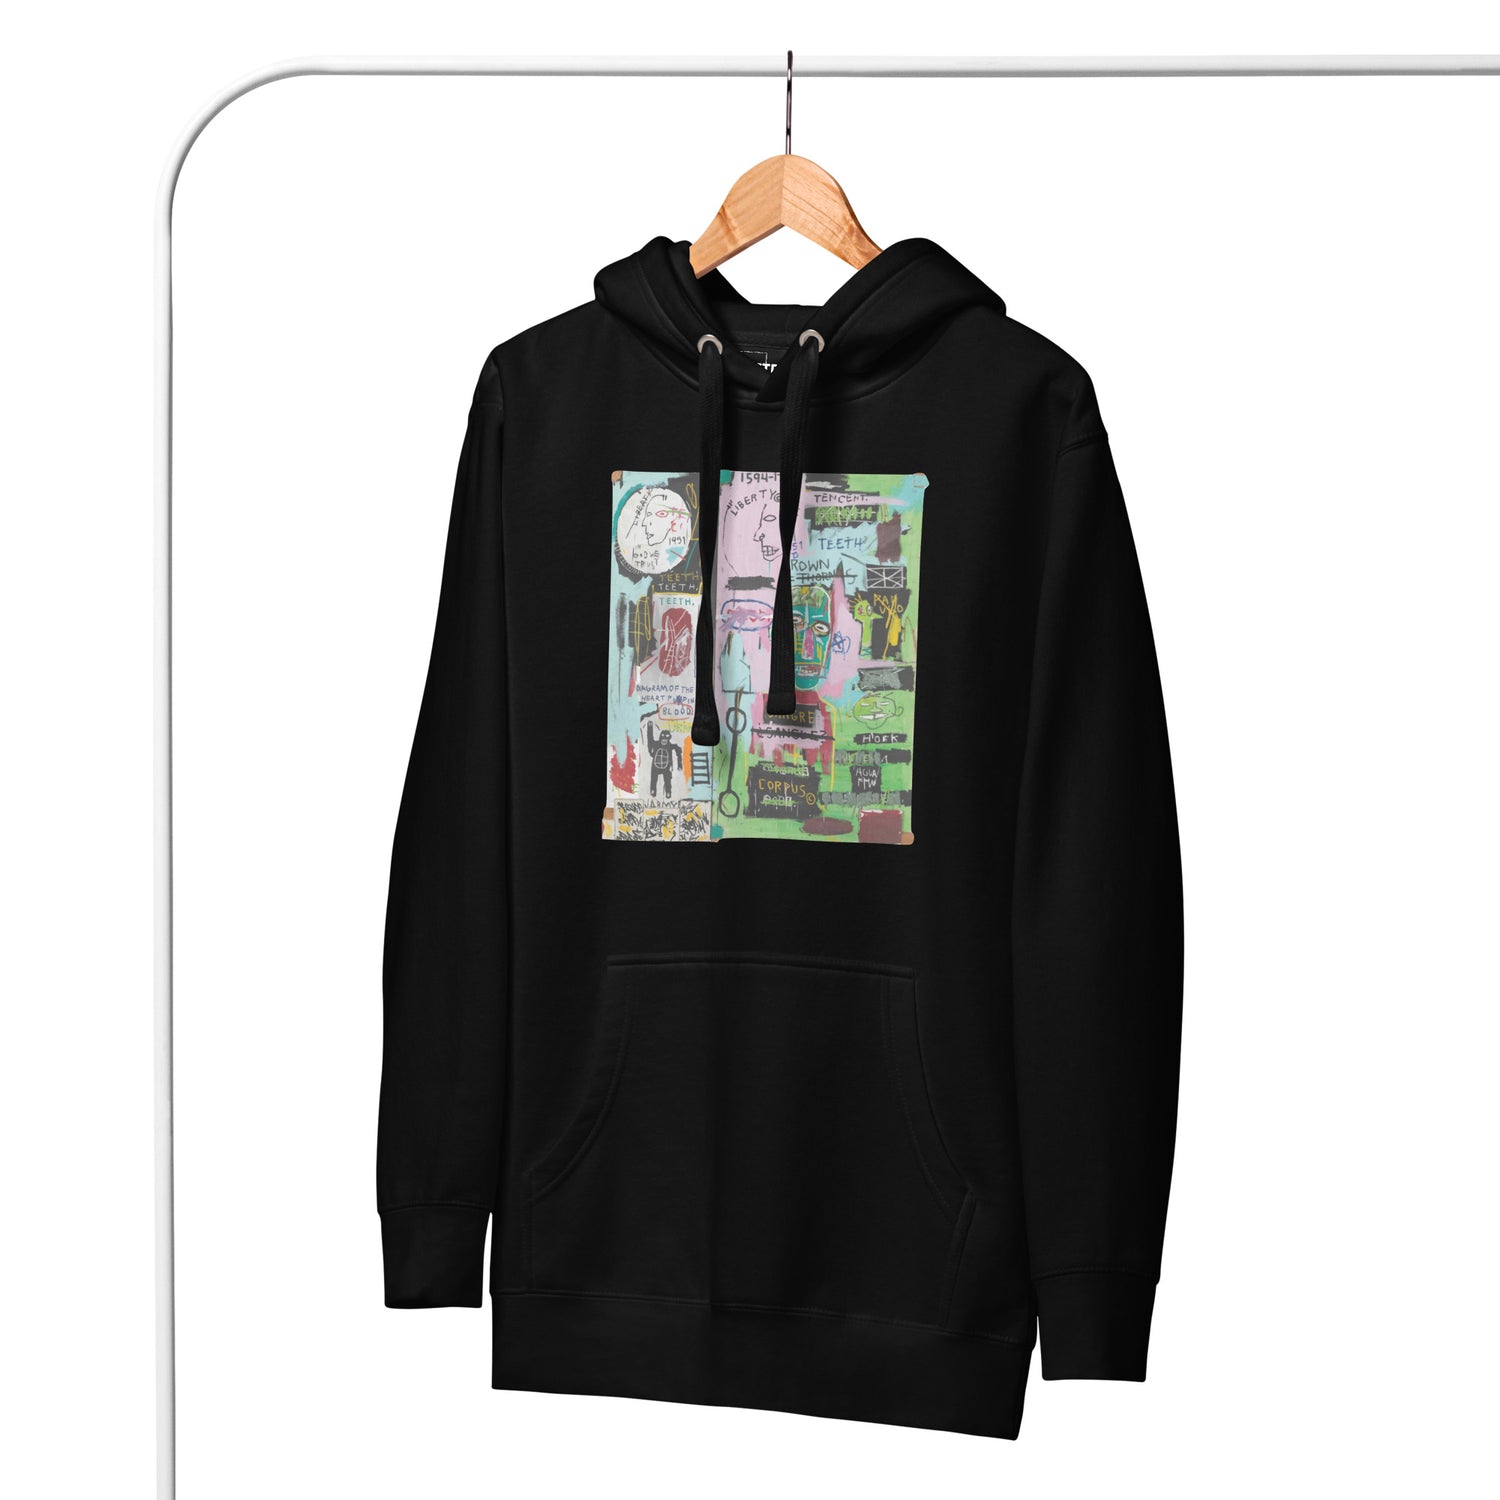 Jean-Michel Basquiat "In Italian" Artwork Printed Premium Streetwear Sweatshirt Hoodie Black